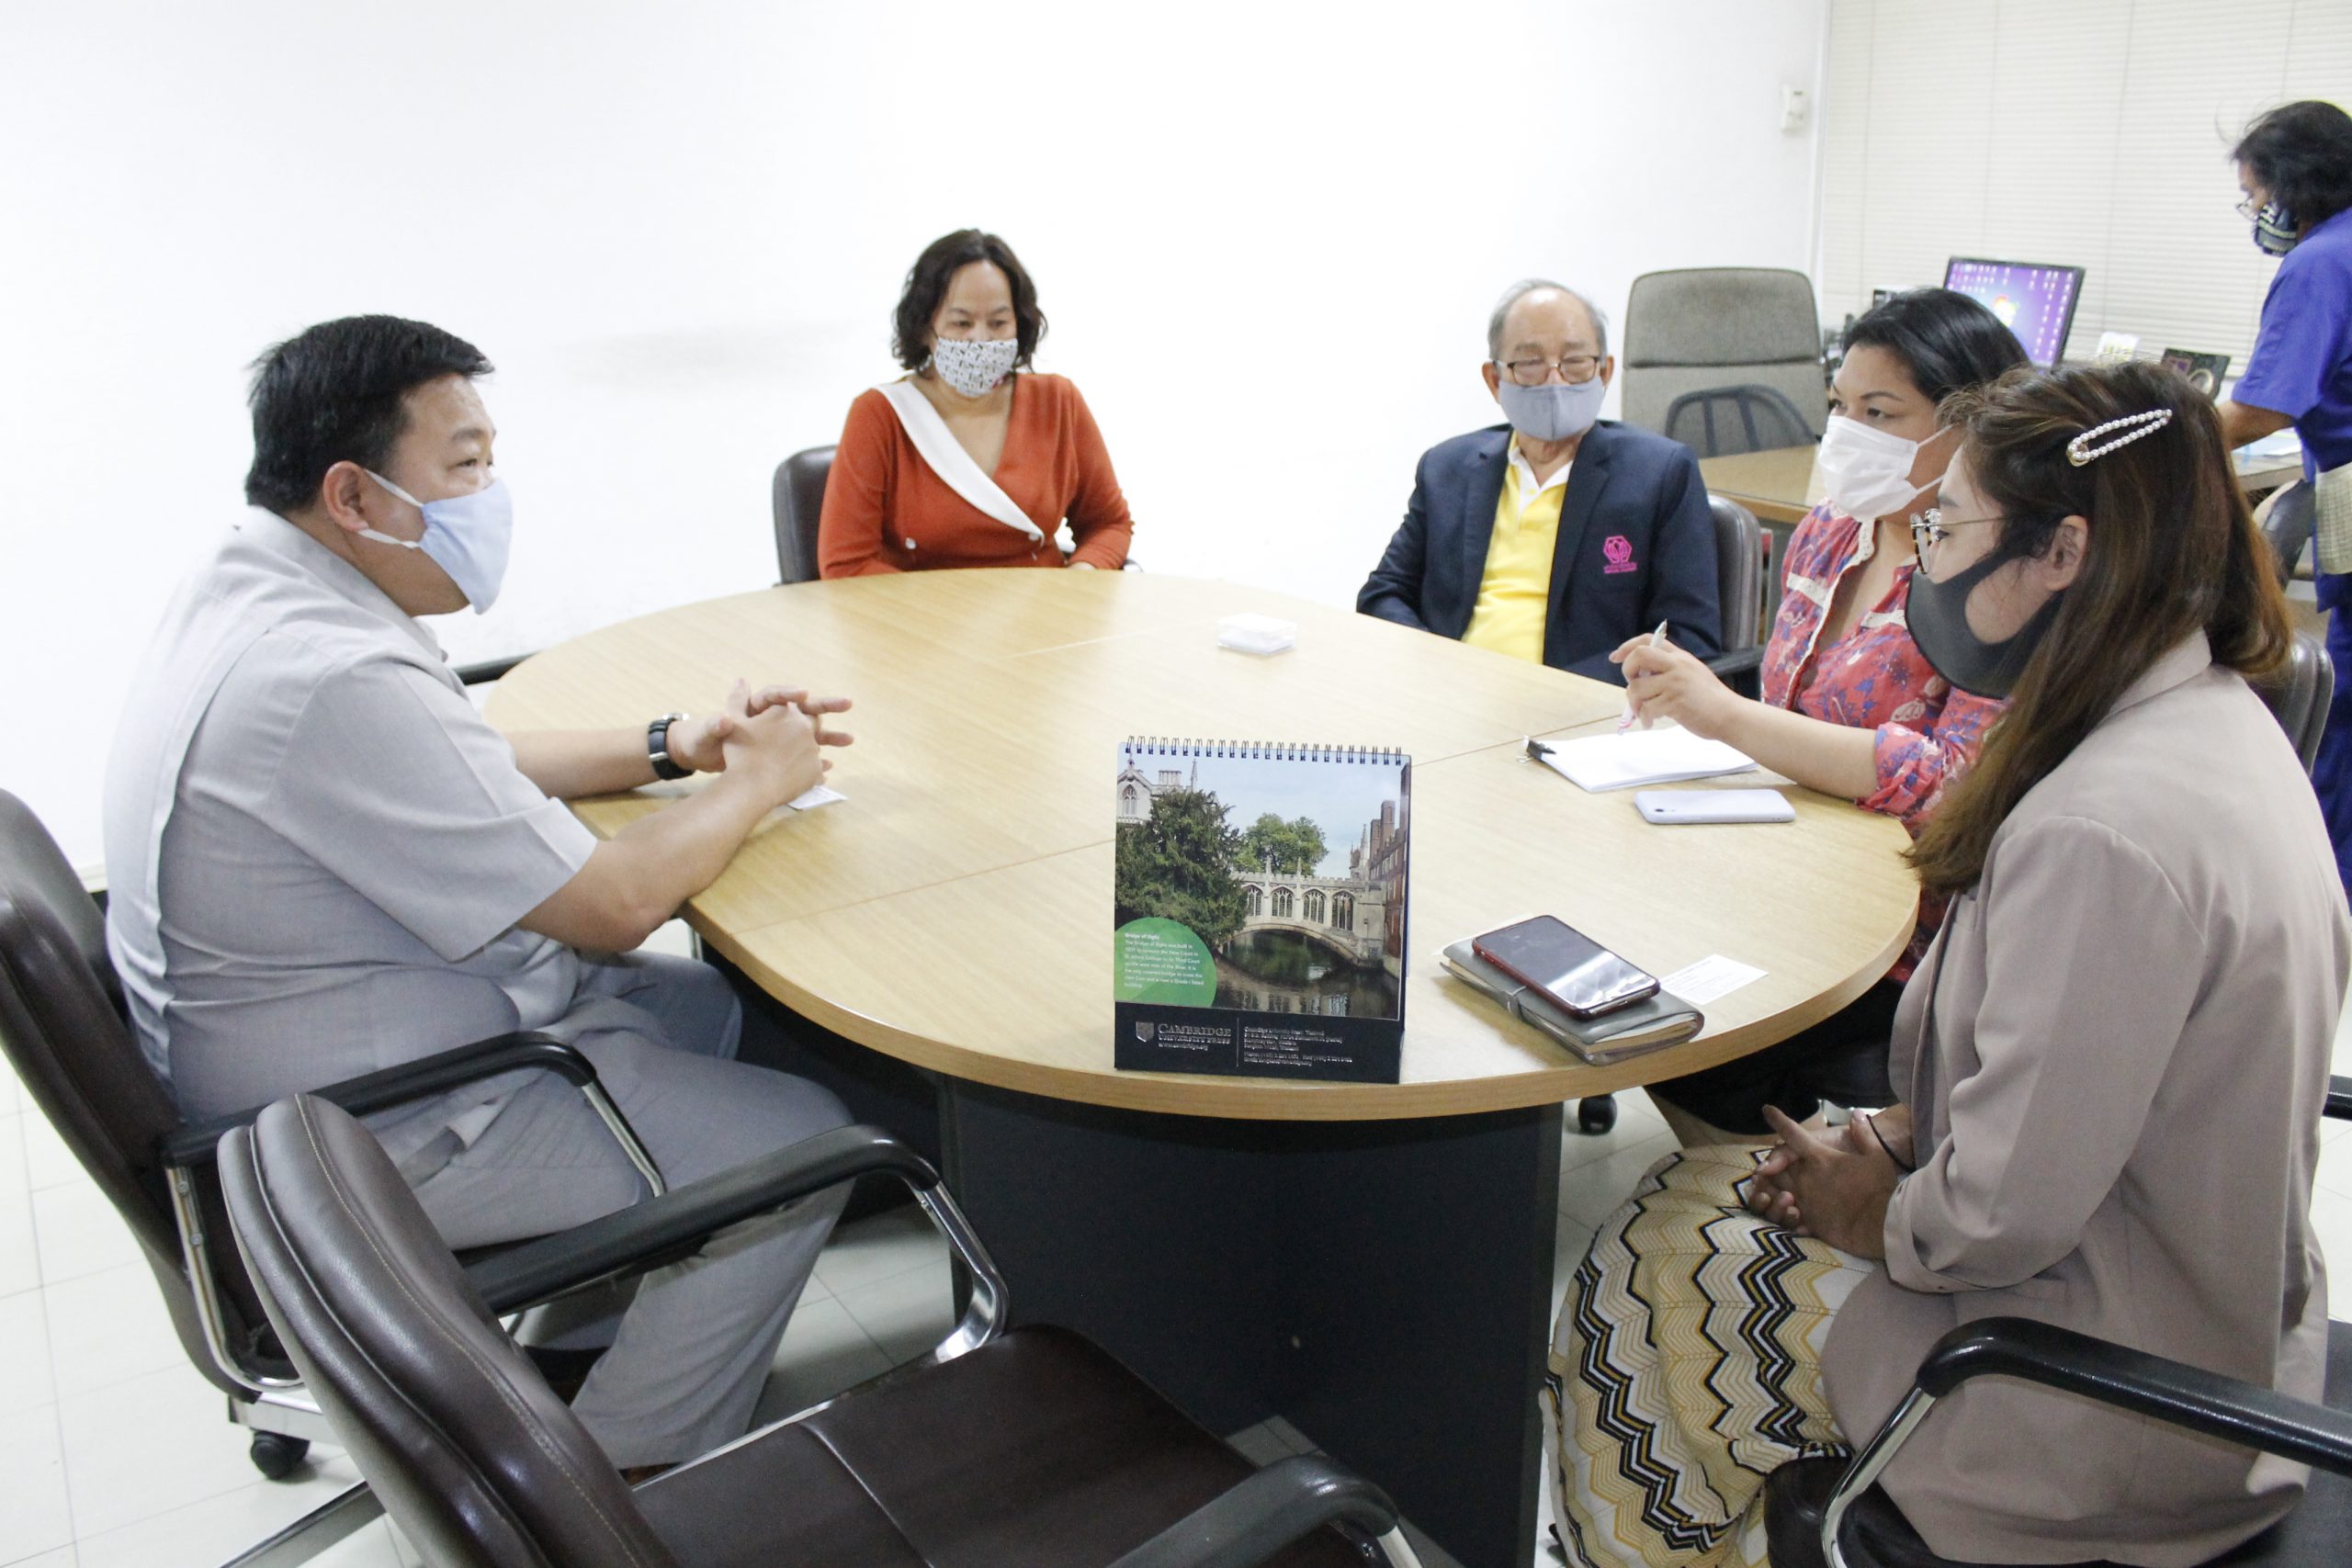 ภาพข่าว: ม.ศรีปทุม ชลบุรี หารือบริษัท THAI SUMMIT PK GROUP วางแผนพัฒนานักศึกษาและต่อยอดอาชีพ